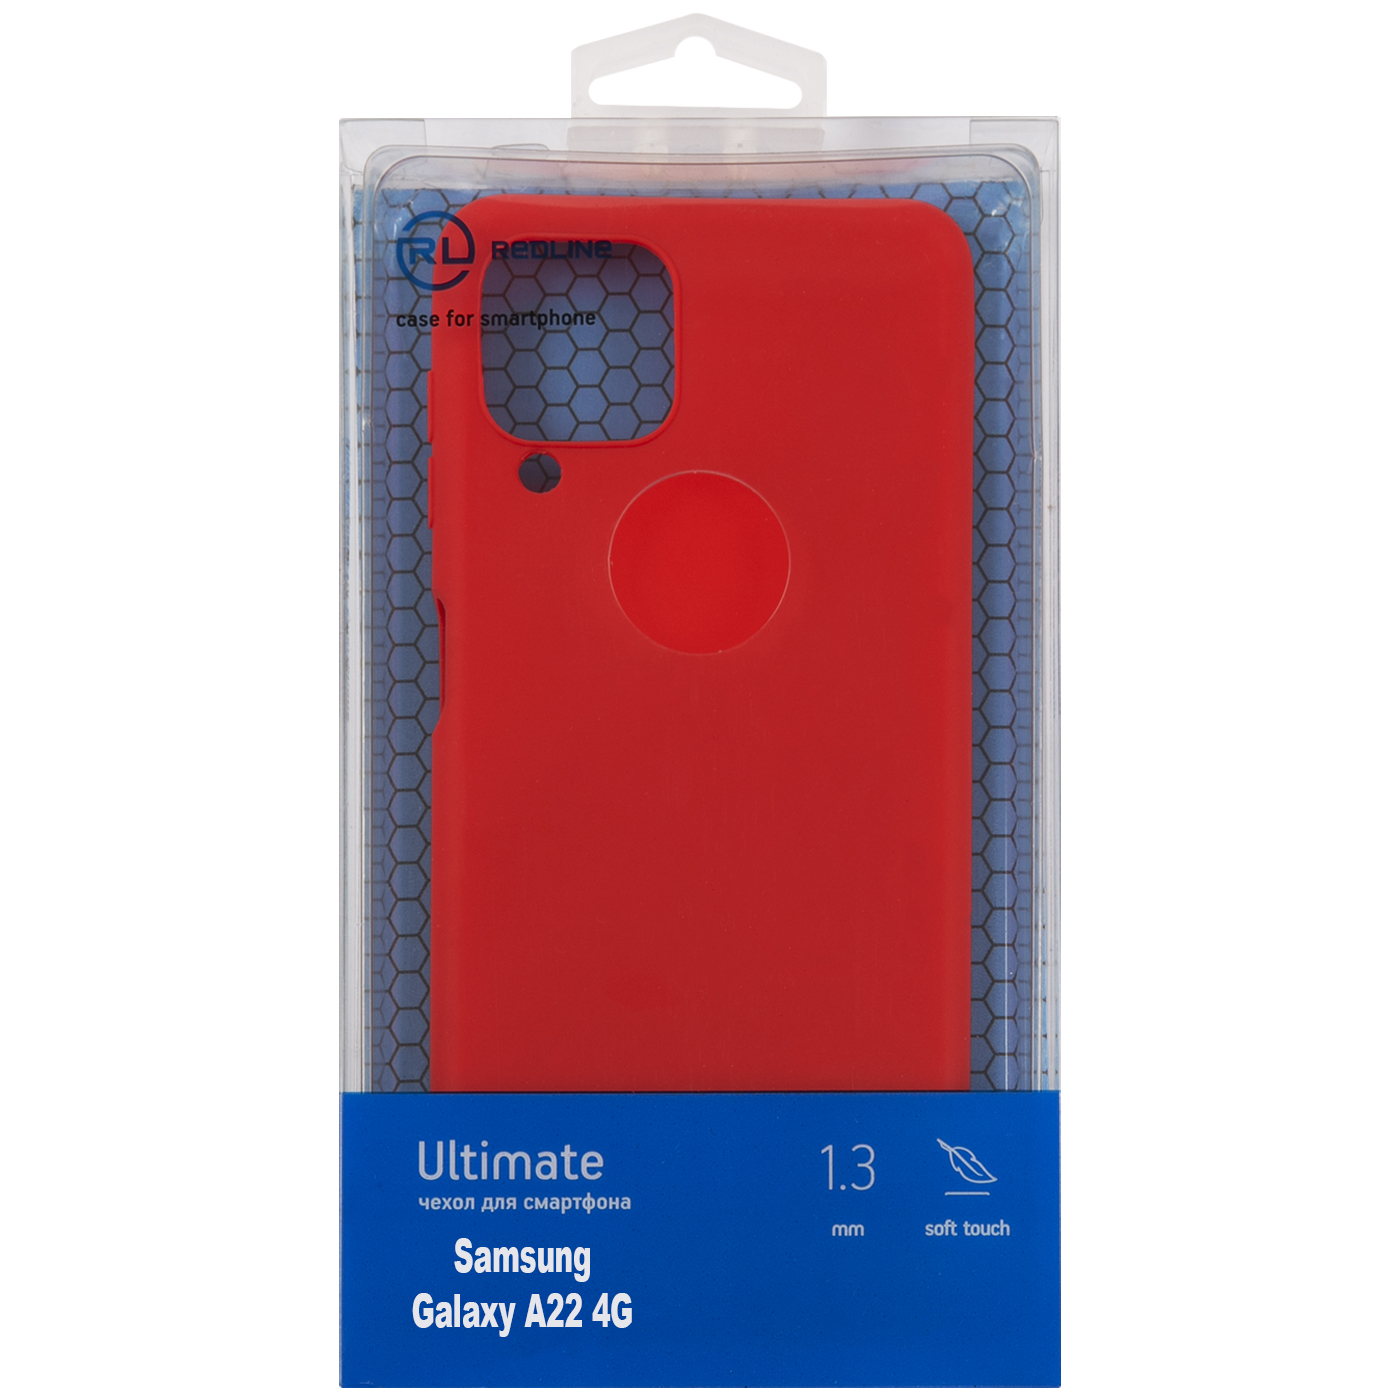 Чехол защитный Red Line Ultimate для Samsung Galaxy A22 4G, красный УТ000025031 комплект 4 штук чехол защитный red line ultimate для samsung galaxy a22 4g черный